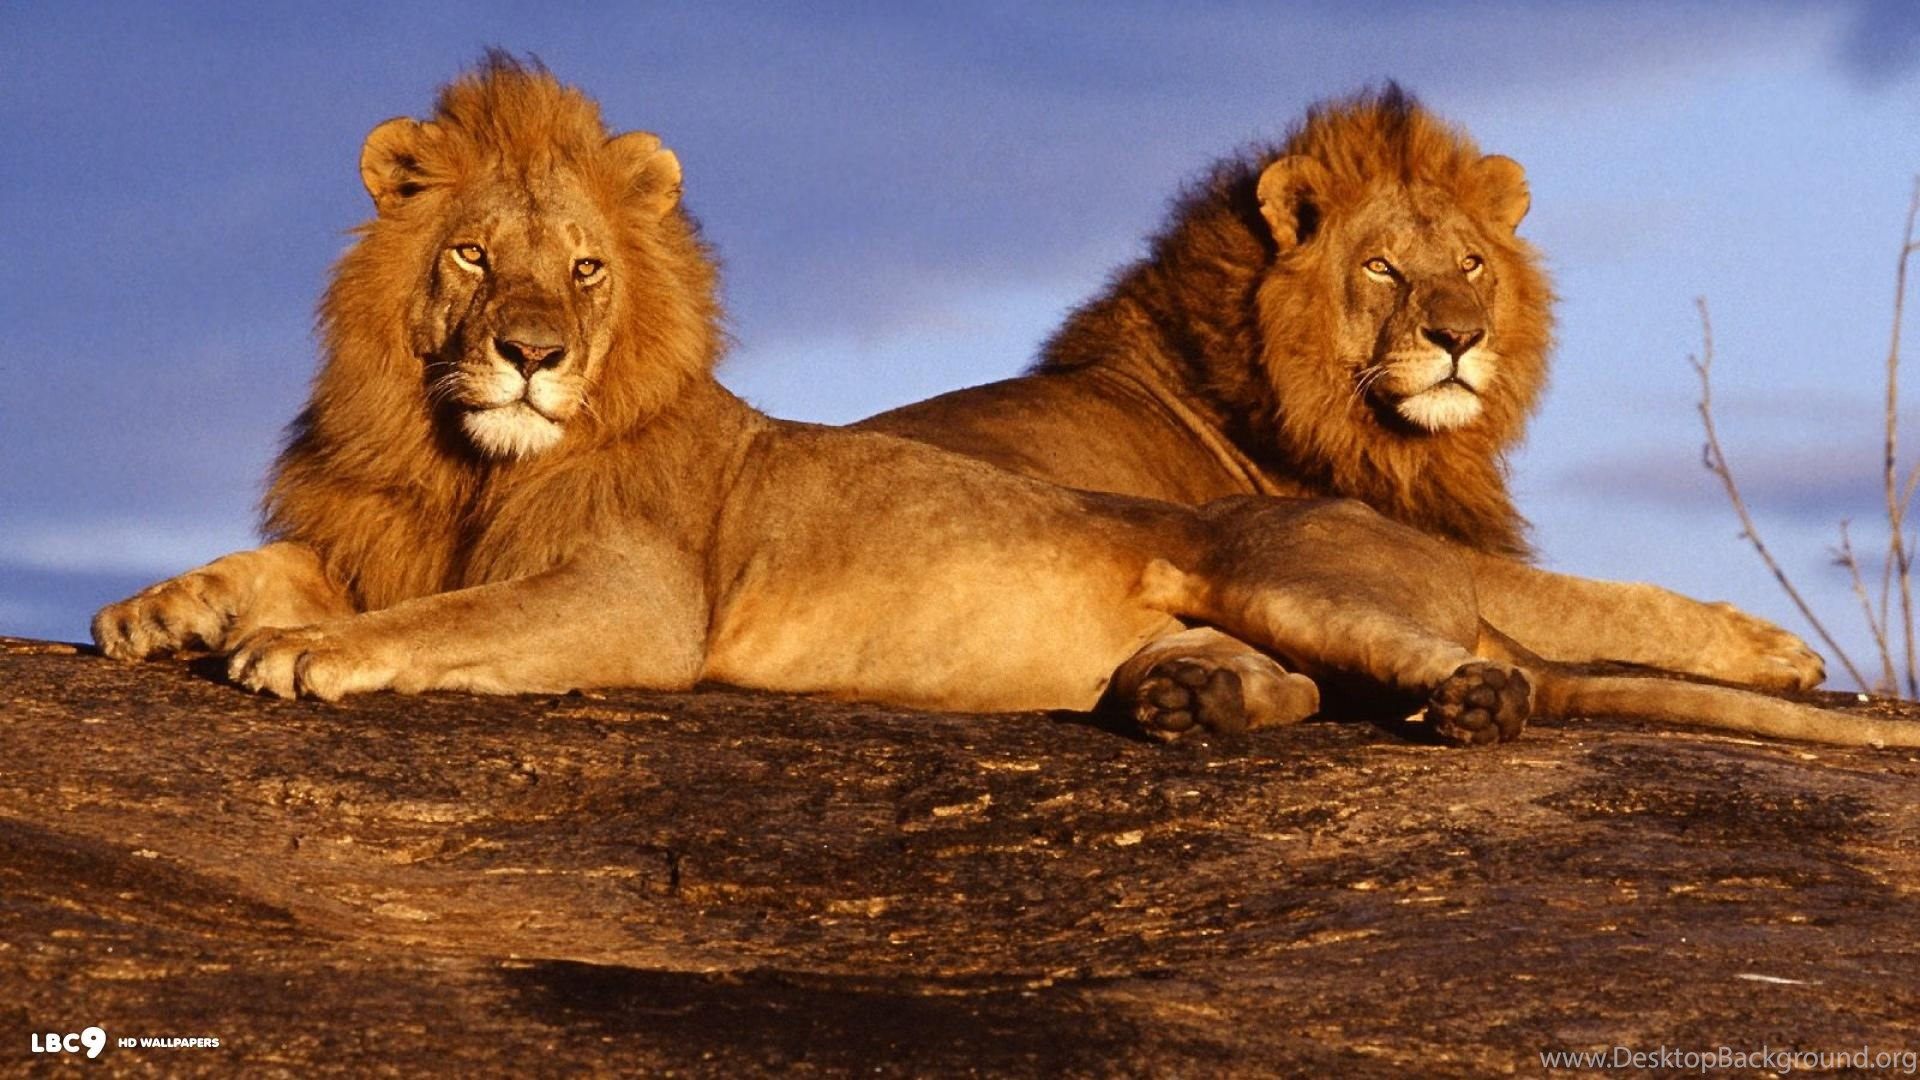 African lions Wallpaper HD 1080p Widescreen Desktop Background